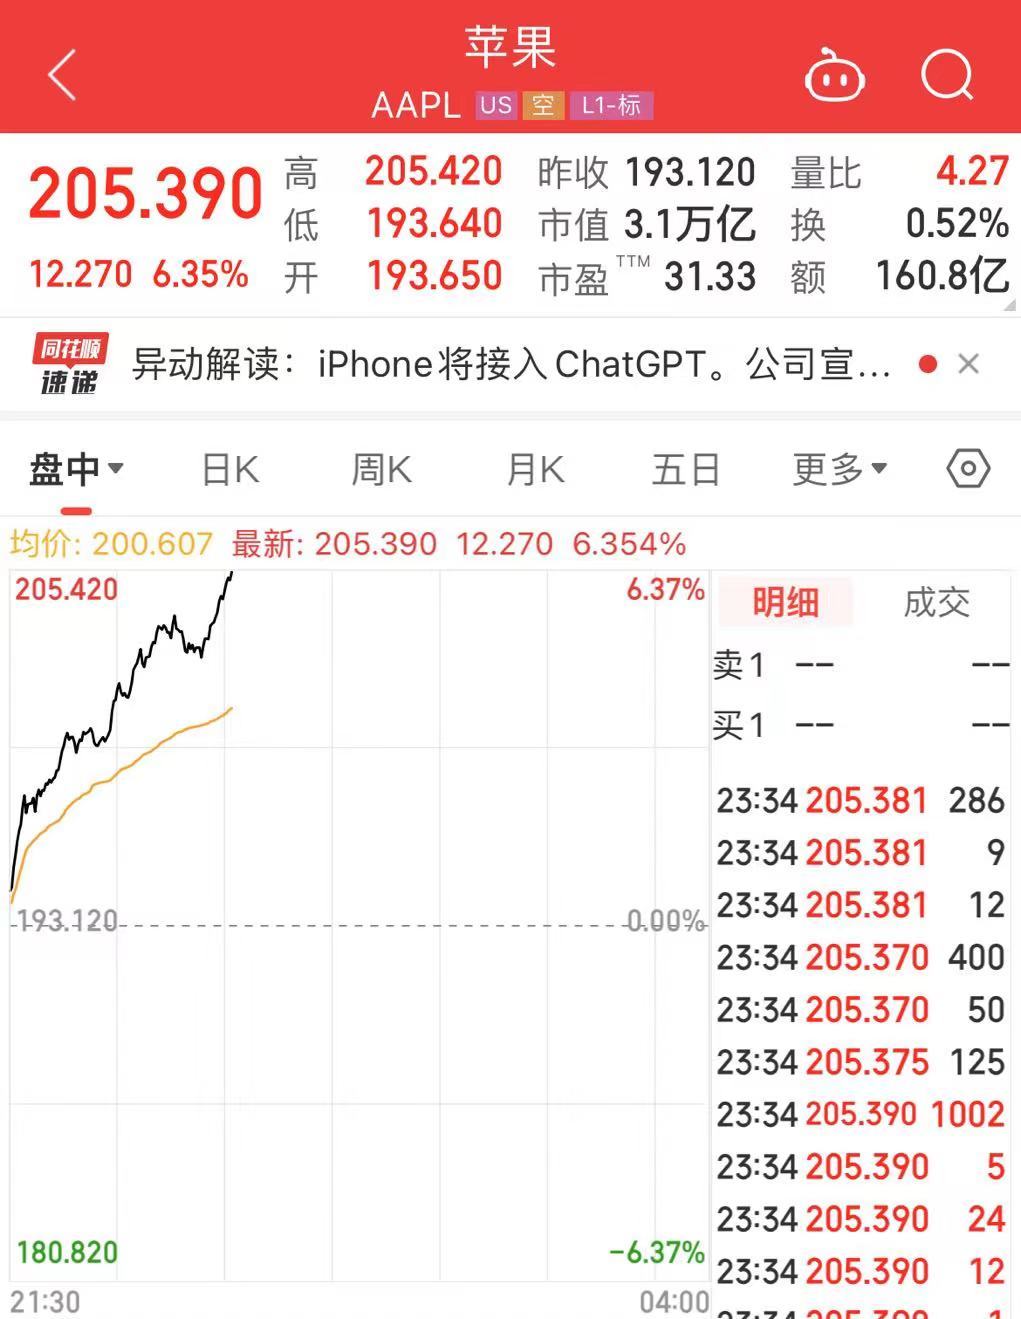 飙升超6%！苹果股价创历史新高，市值大涨超1.3万亿元！此前官宣iPhone将接入ChatGPT